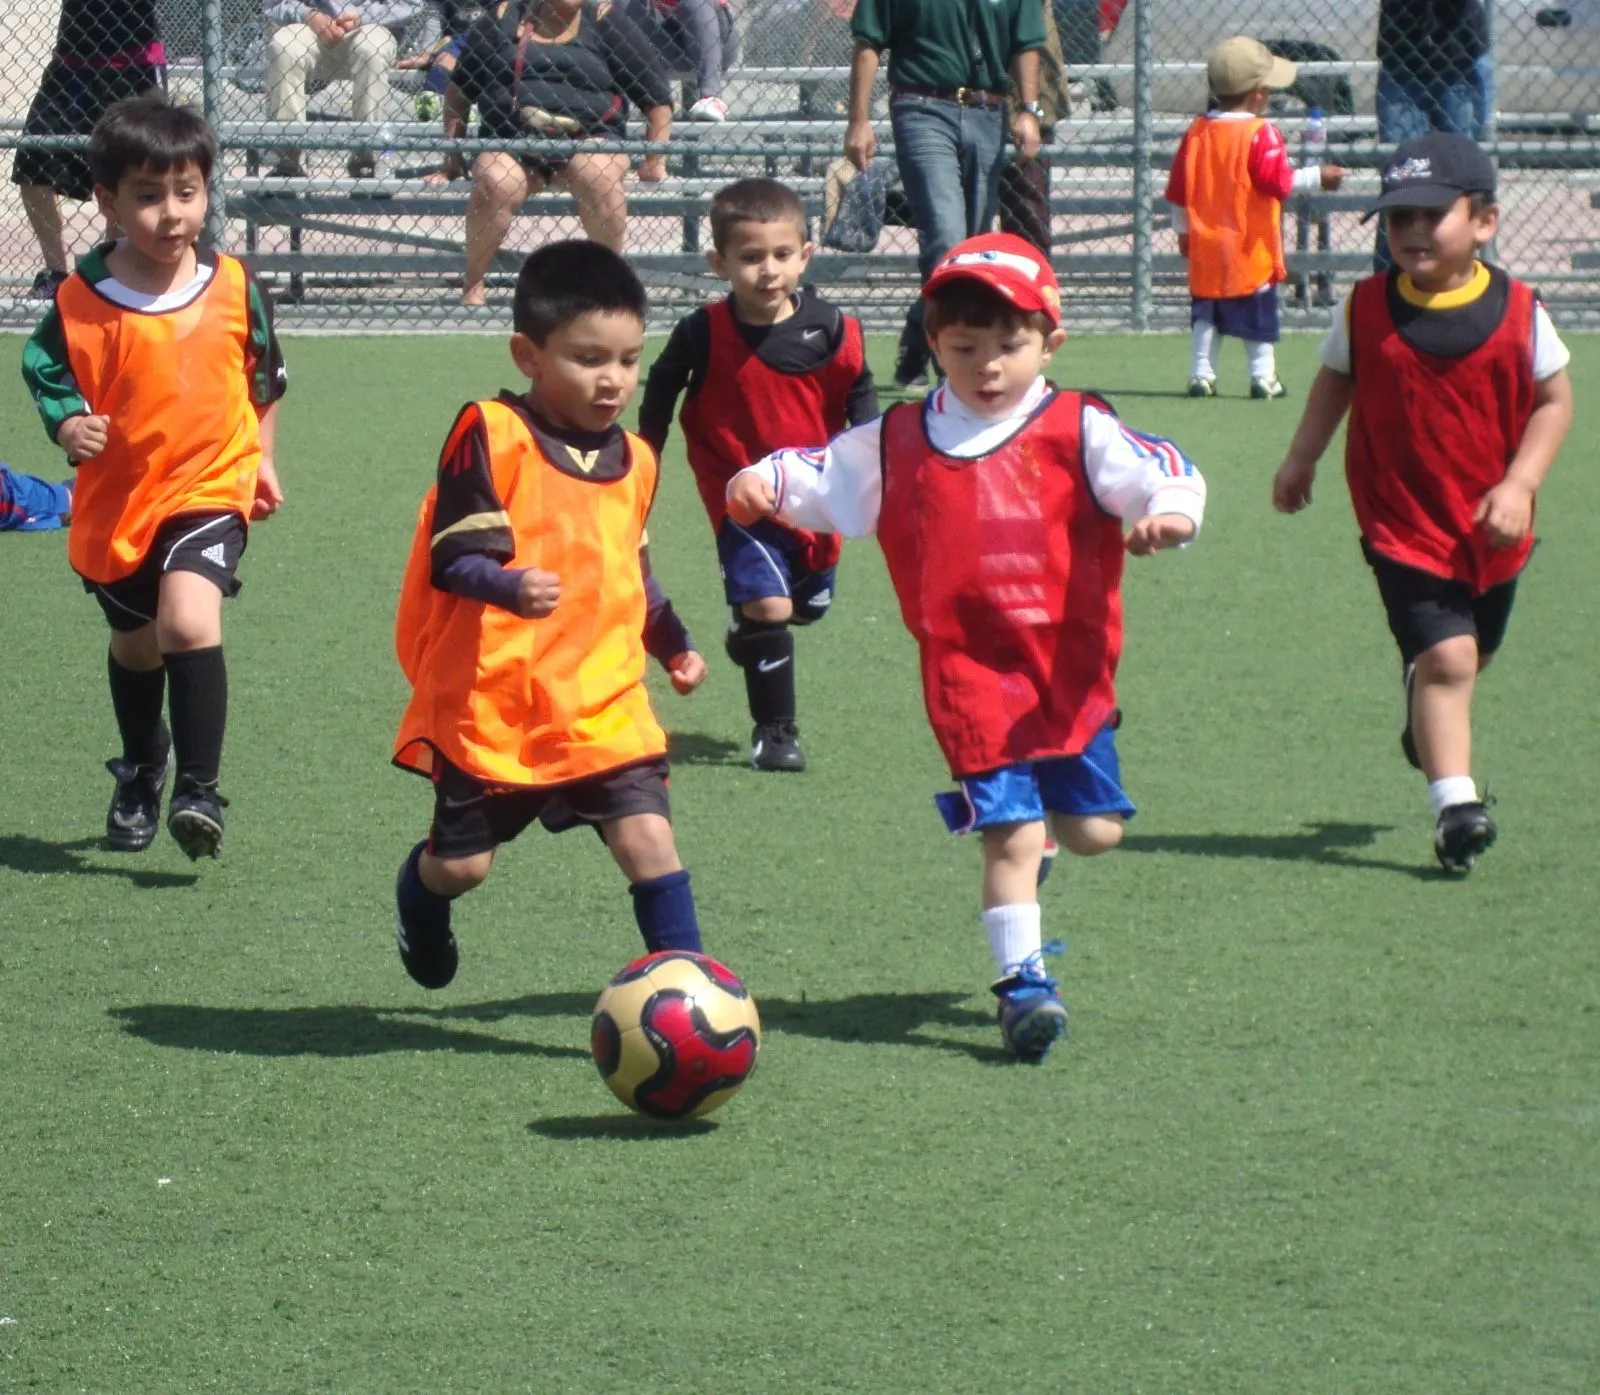 El fútbol: de pequeño a profesional - Fútbol Base, Primera ...